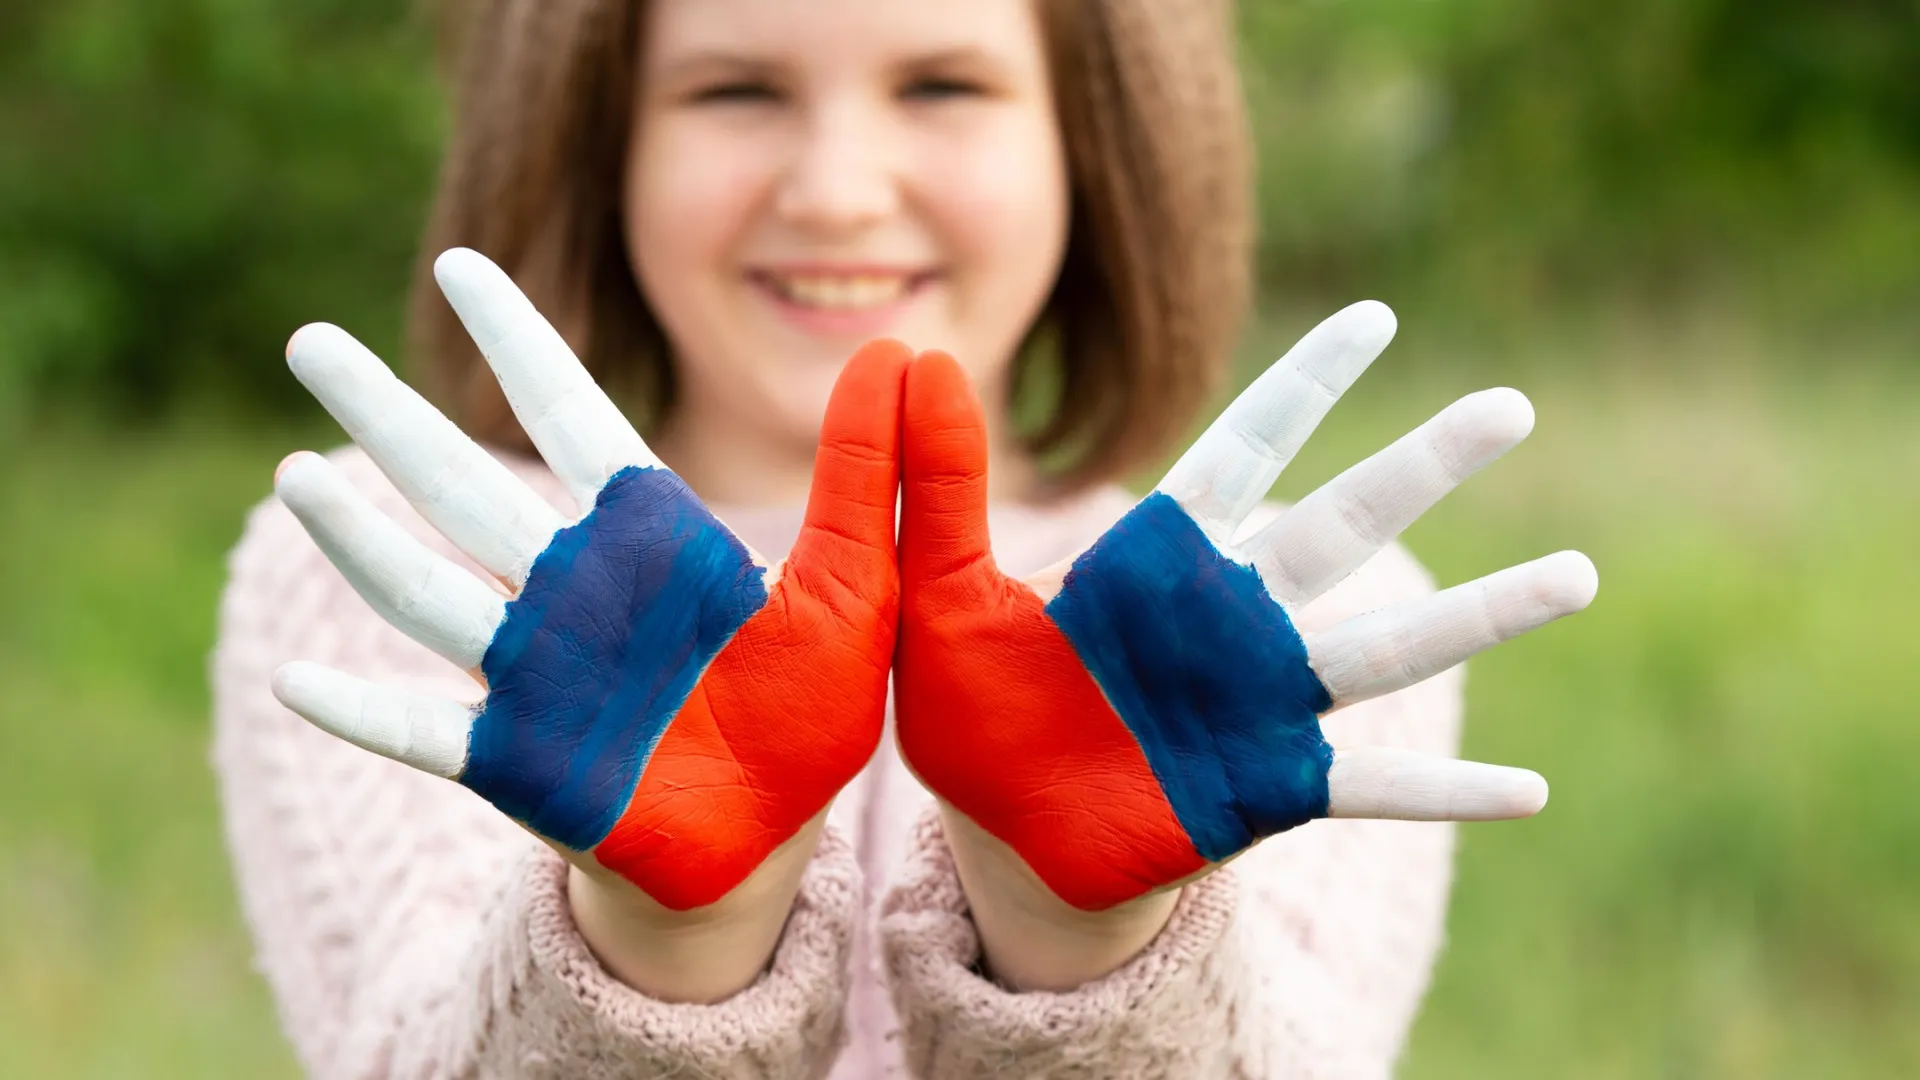 В Муравленко в День России можно будет с помощью аквагрима разукрасить лицо или руки. Фото: Sv Svetlana / Shutterstock / Fotodom